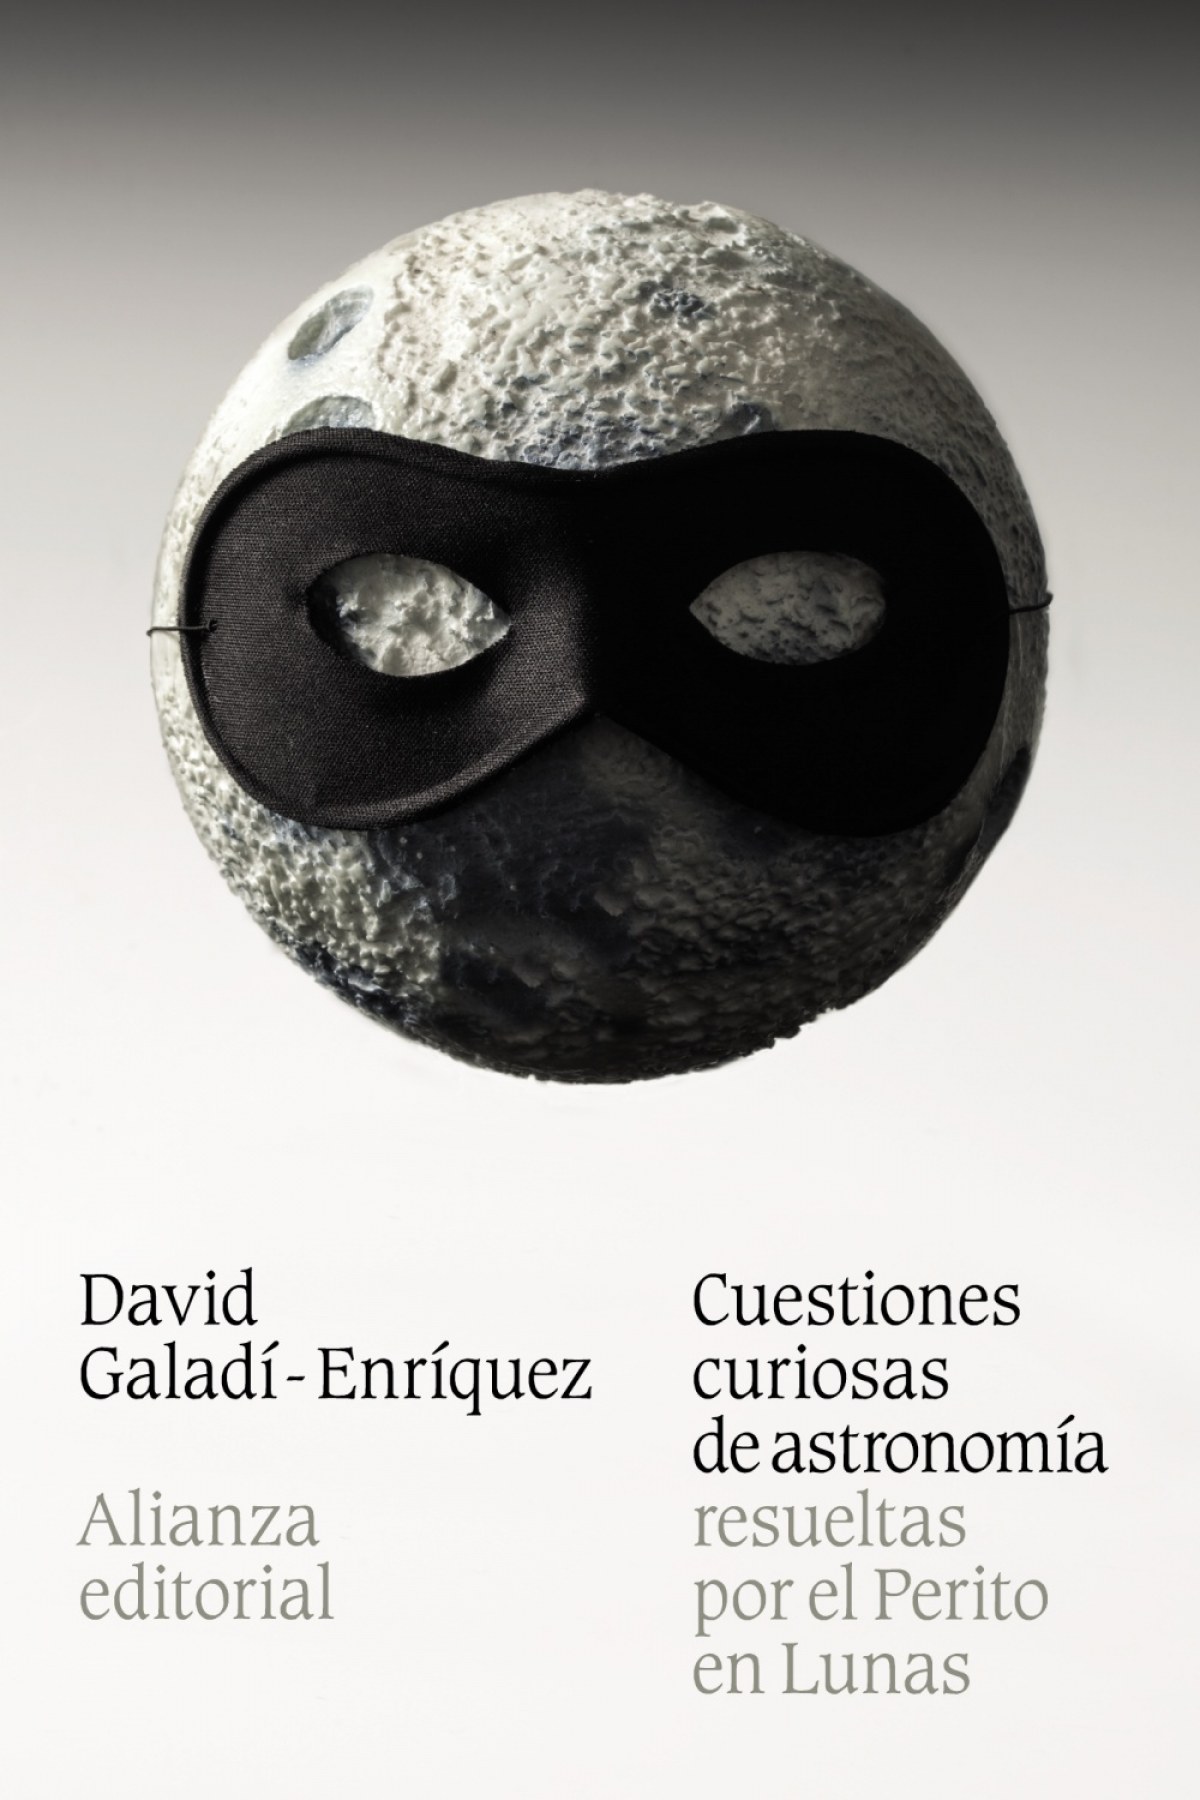 Cuestiones curiosas de astronomía resueltas por el Perito en lunas - Galadí-Enríquez, David